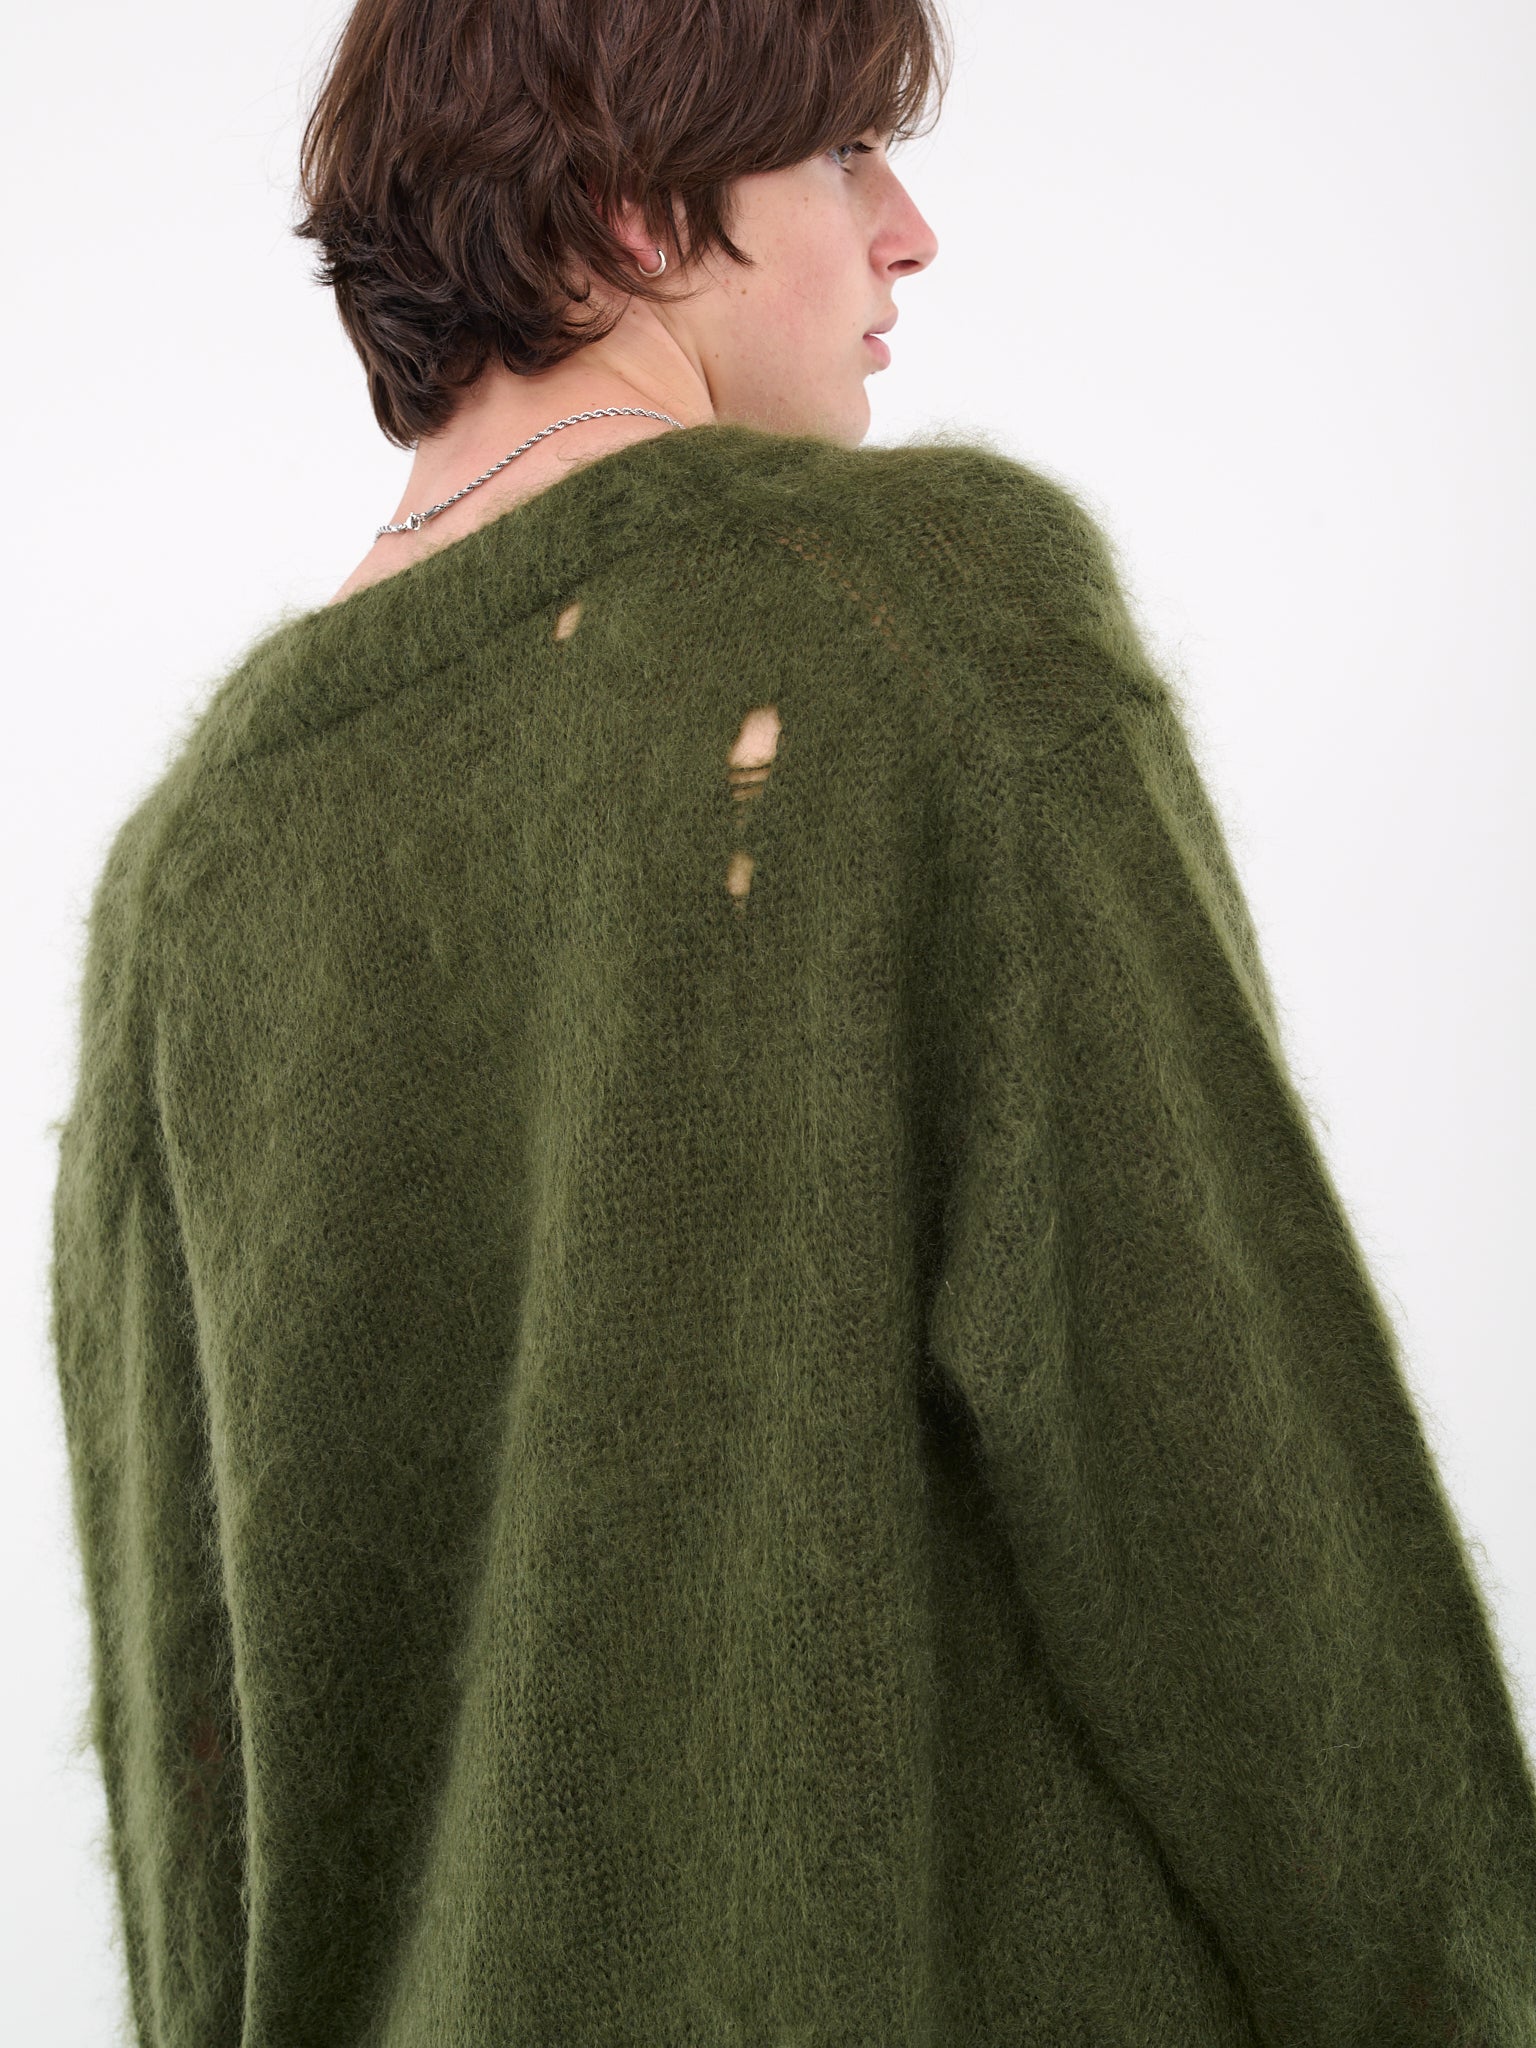 Distressed Knit Cardigan (KT01-KHAKI)